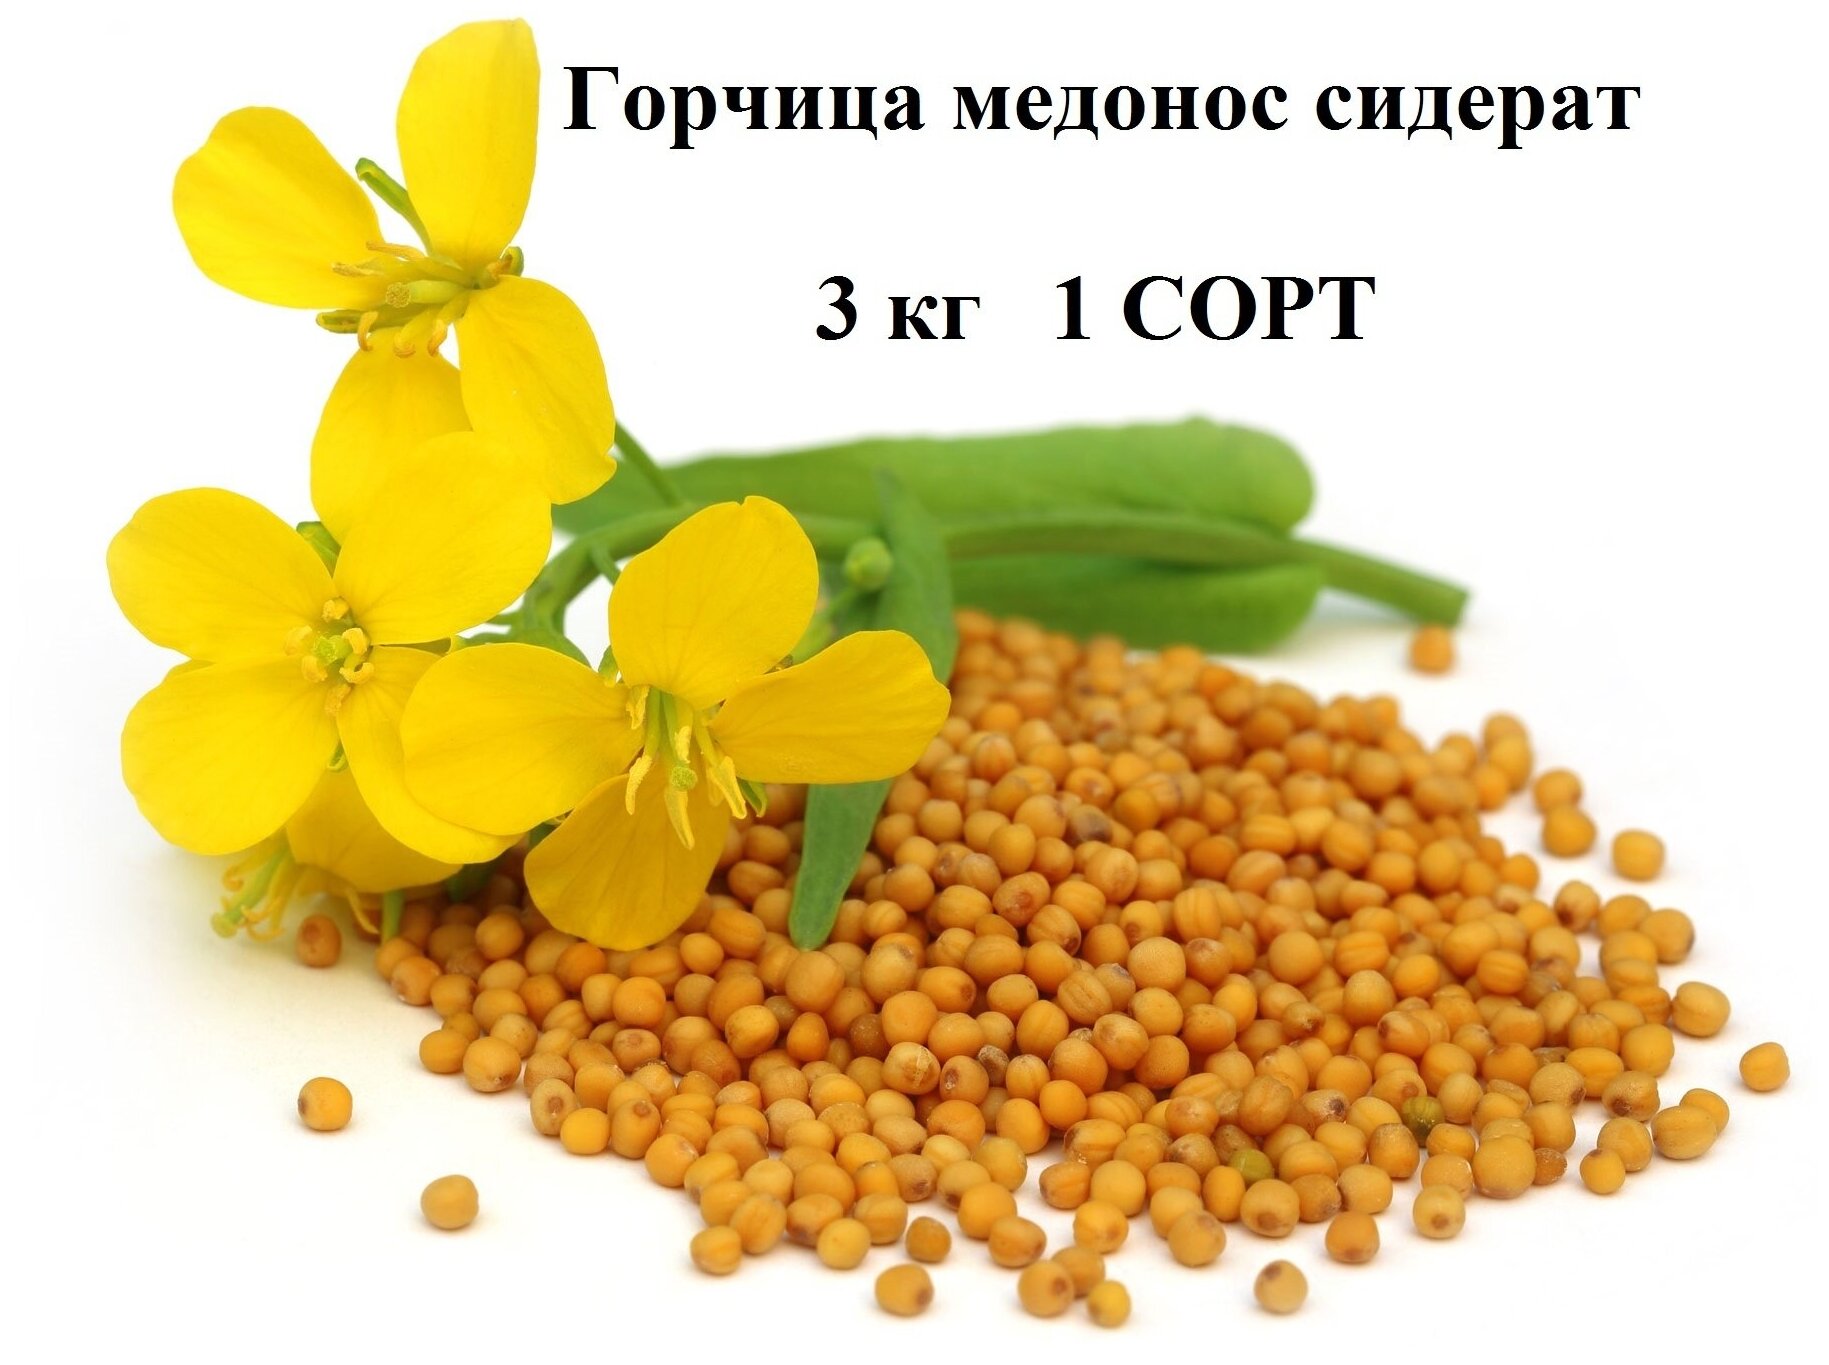 Сидерат Горчица желтая медонос 3 кг / 1 сорт всхожесть полная